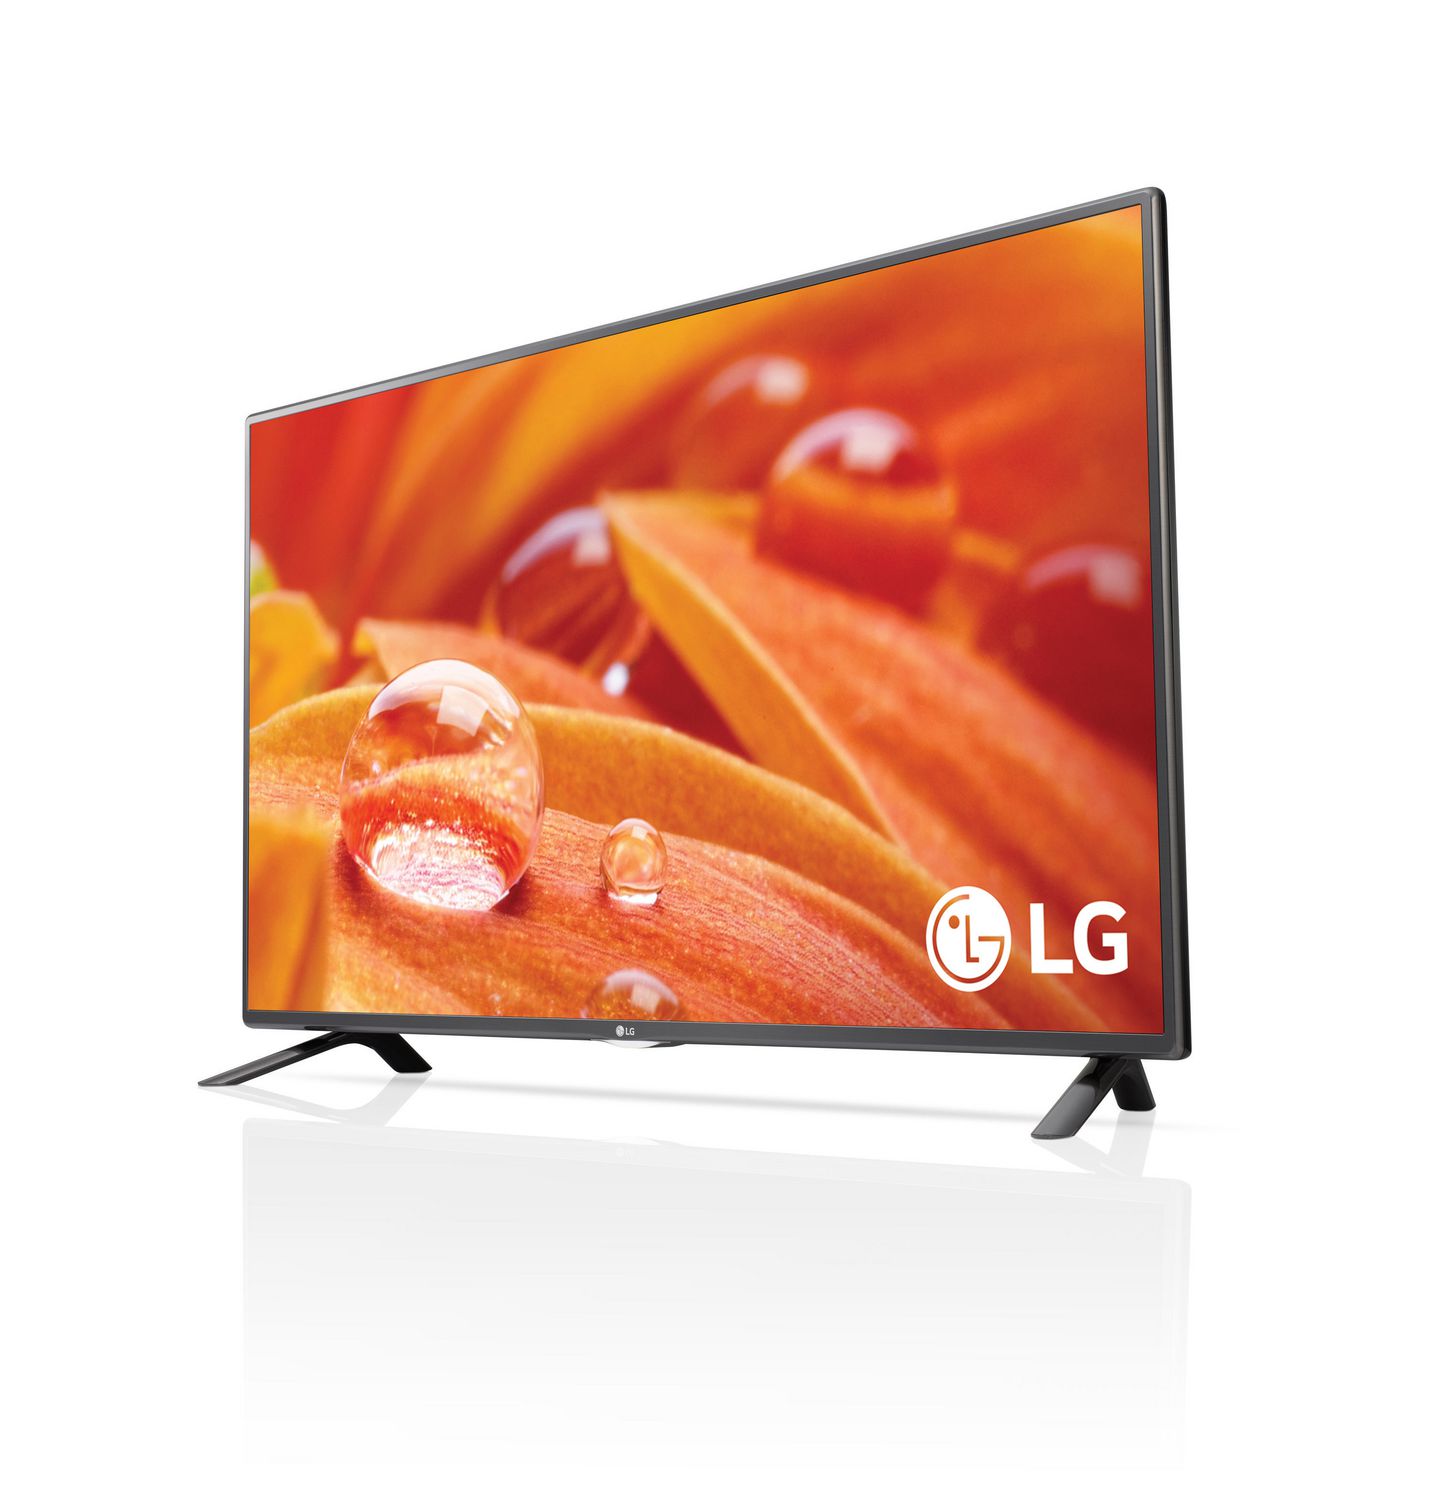 LG 42"FULL 1080p SMART LED TV-42LF5800 | Walmart Canada